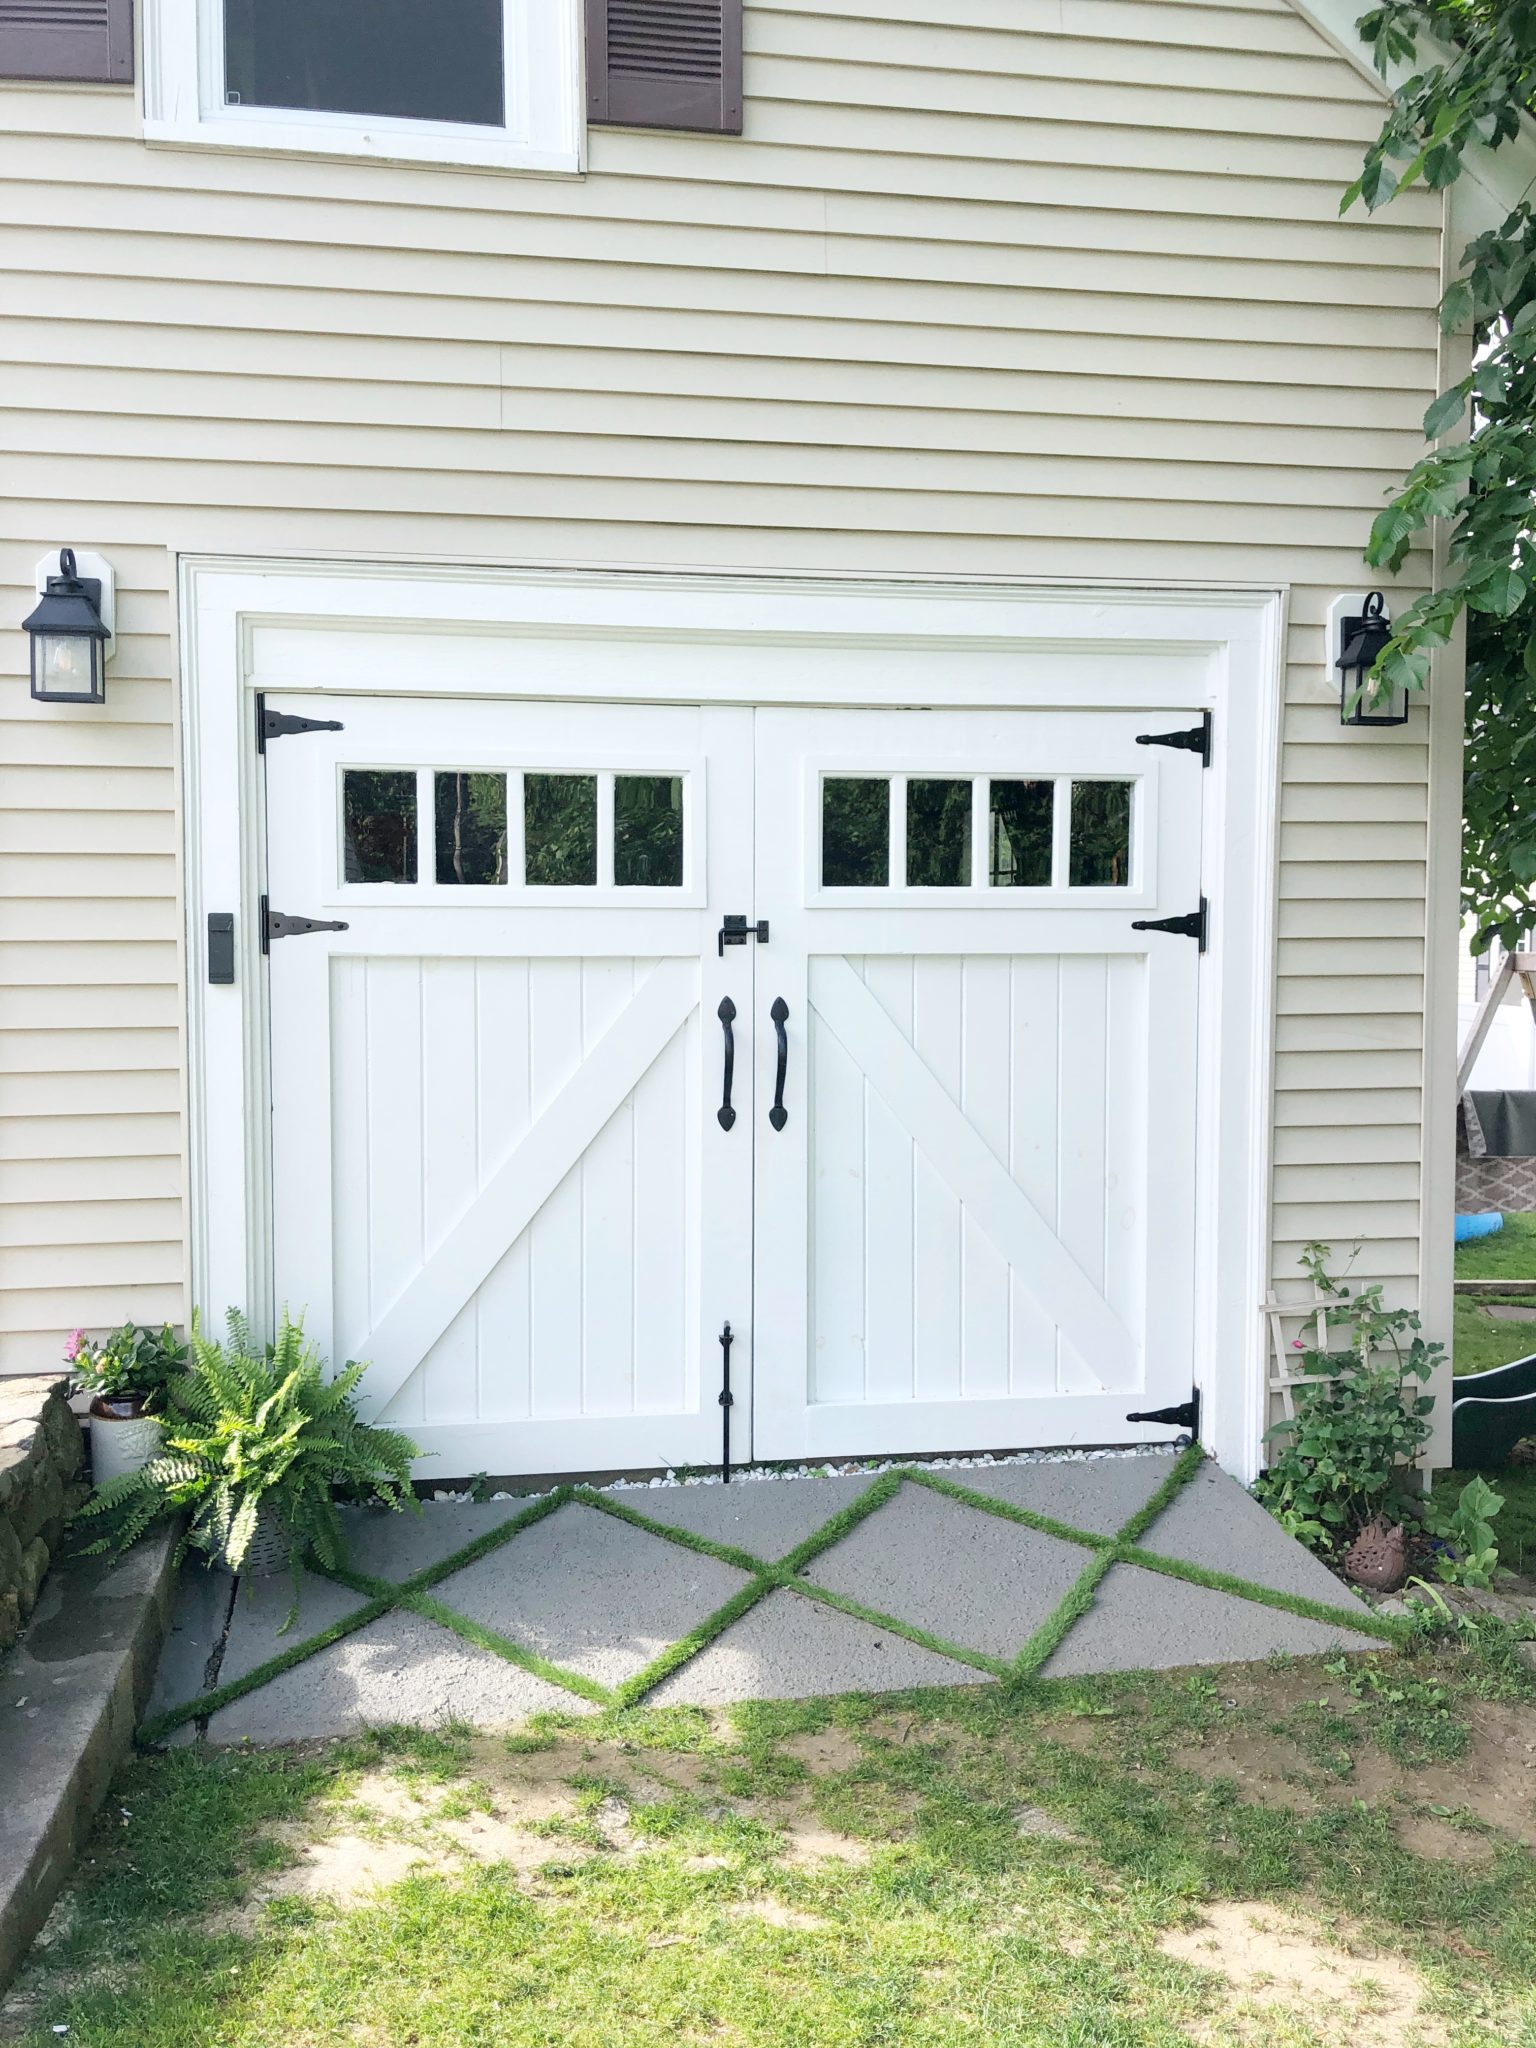 Can I add a garage door opener to a custom-made garage door?